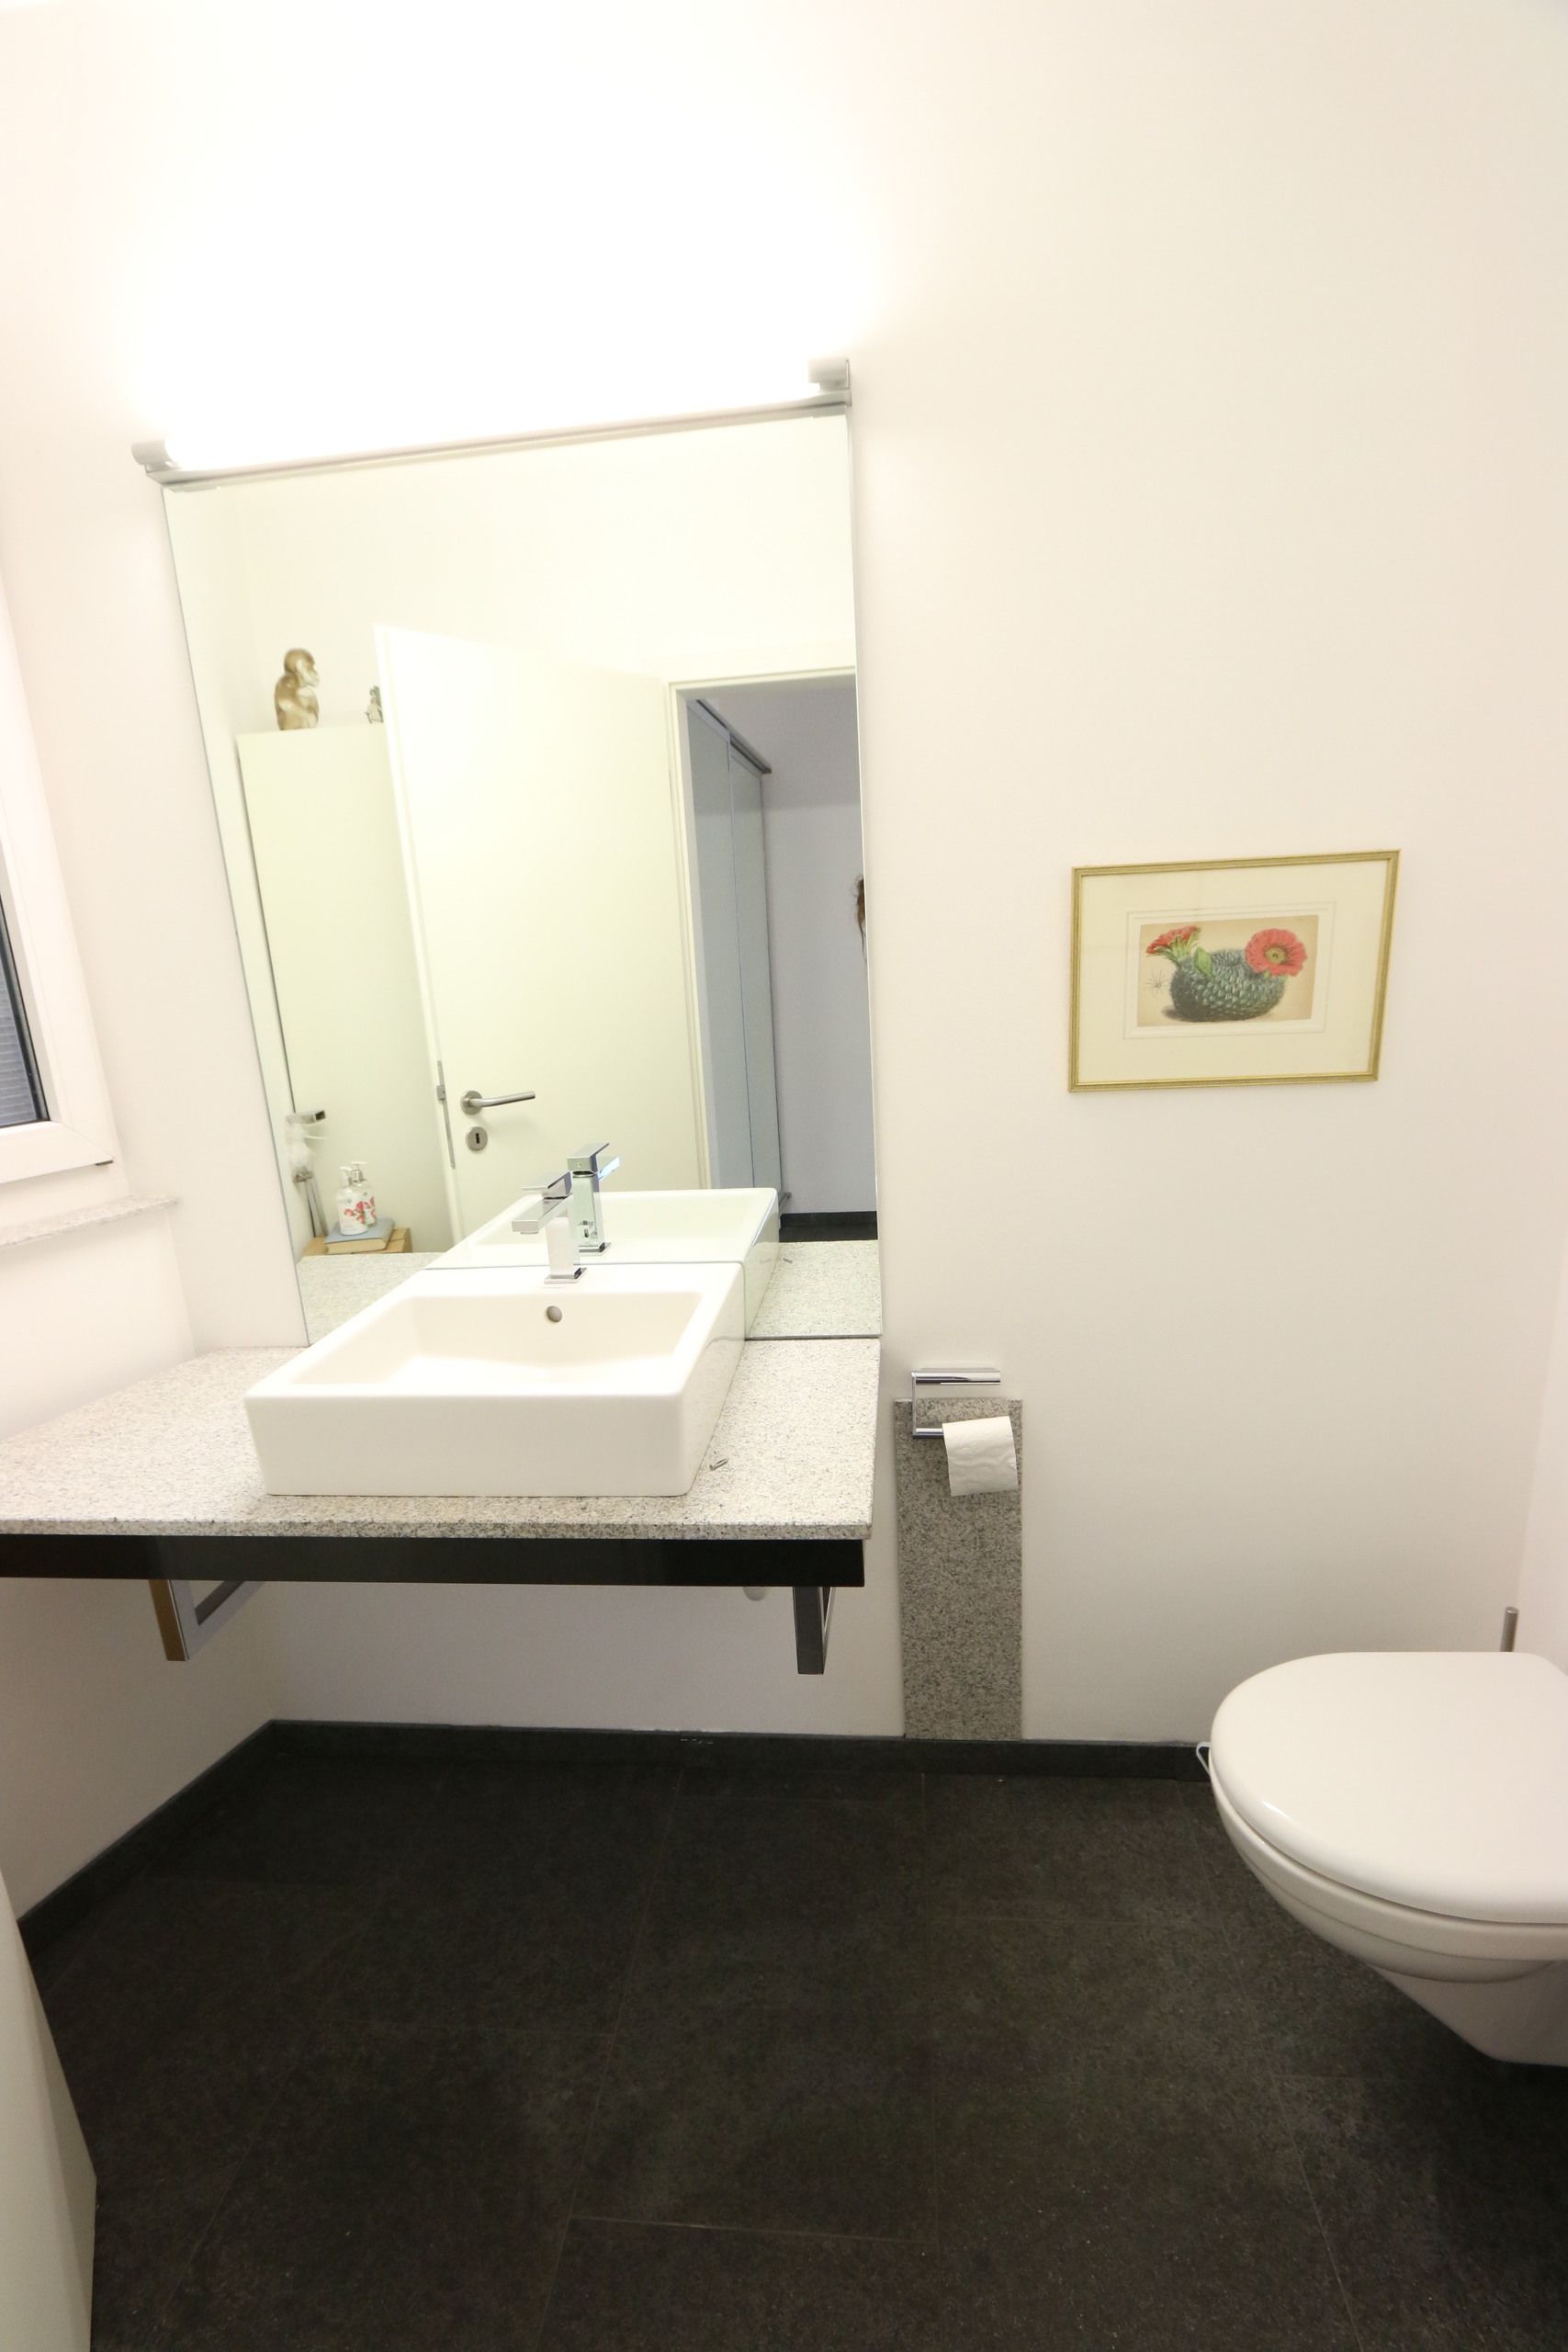 Gäste-WC in modernem Design